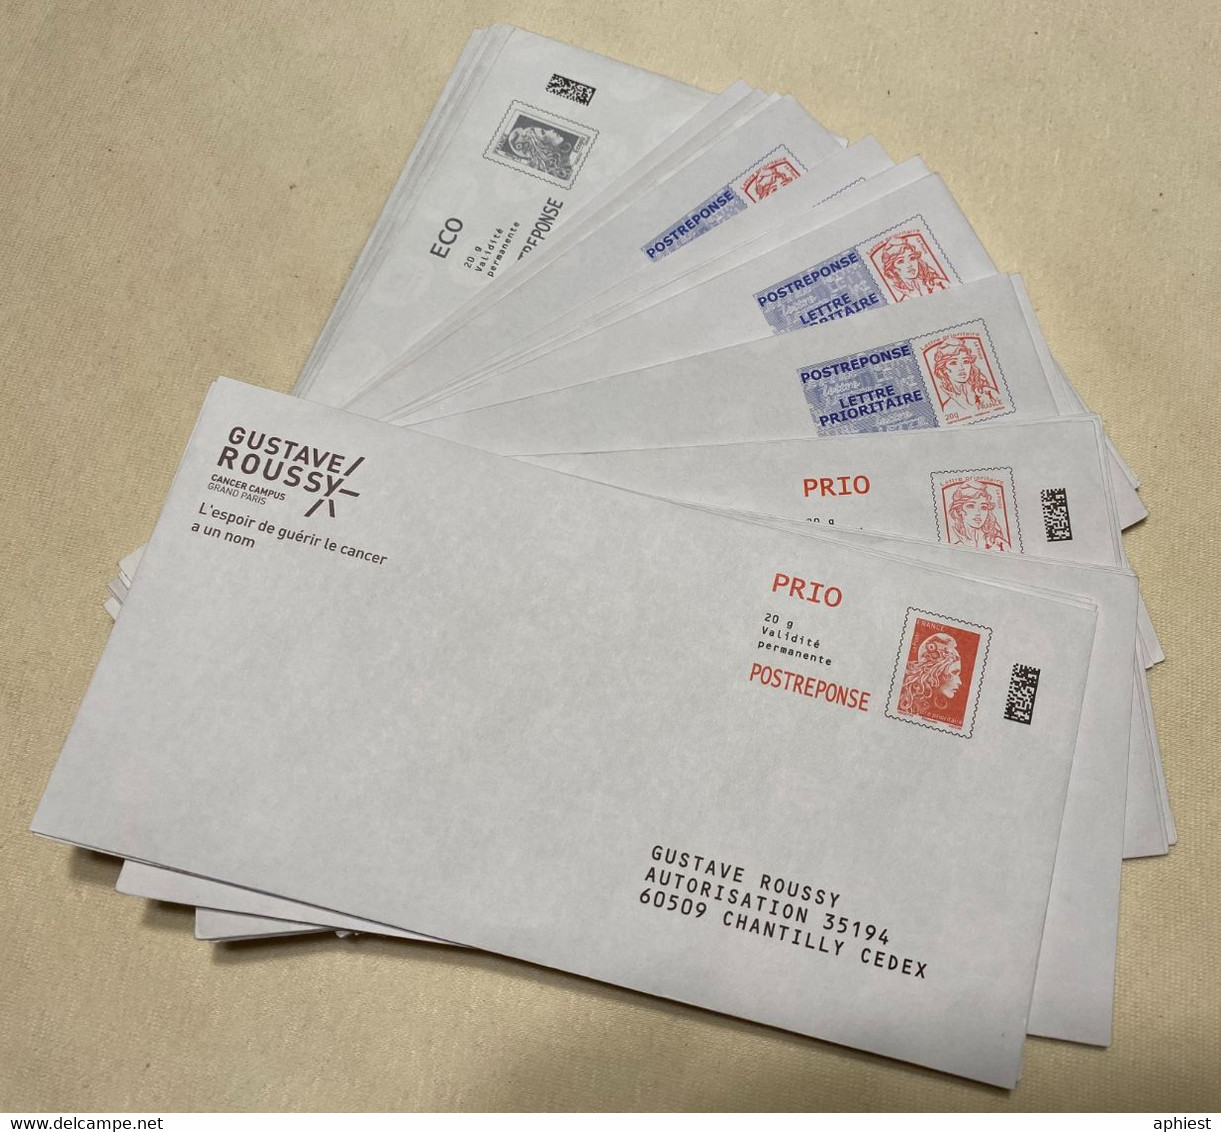 39 Exemplaires De PAP Prio Postereponse Grandes Enveloppes De Plusieurs Types - Prêts-à-poster: Réponse